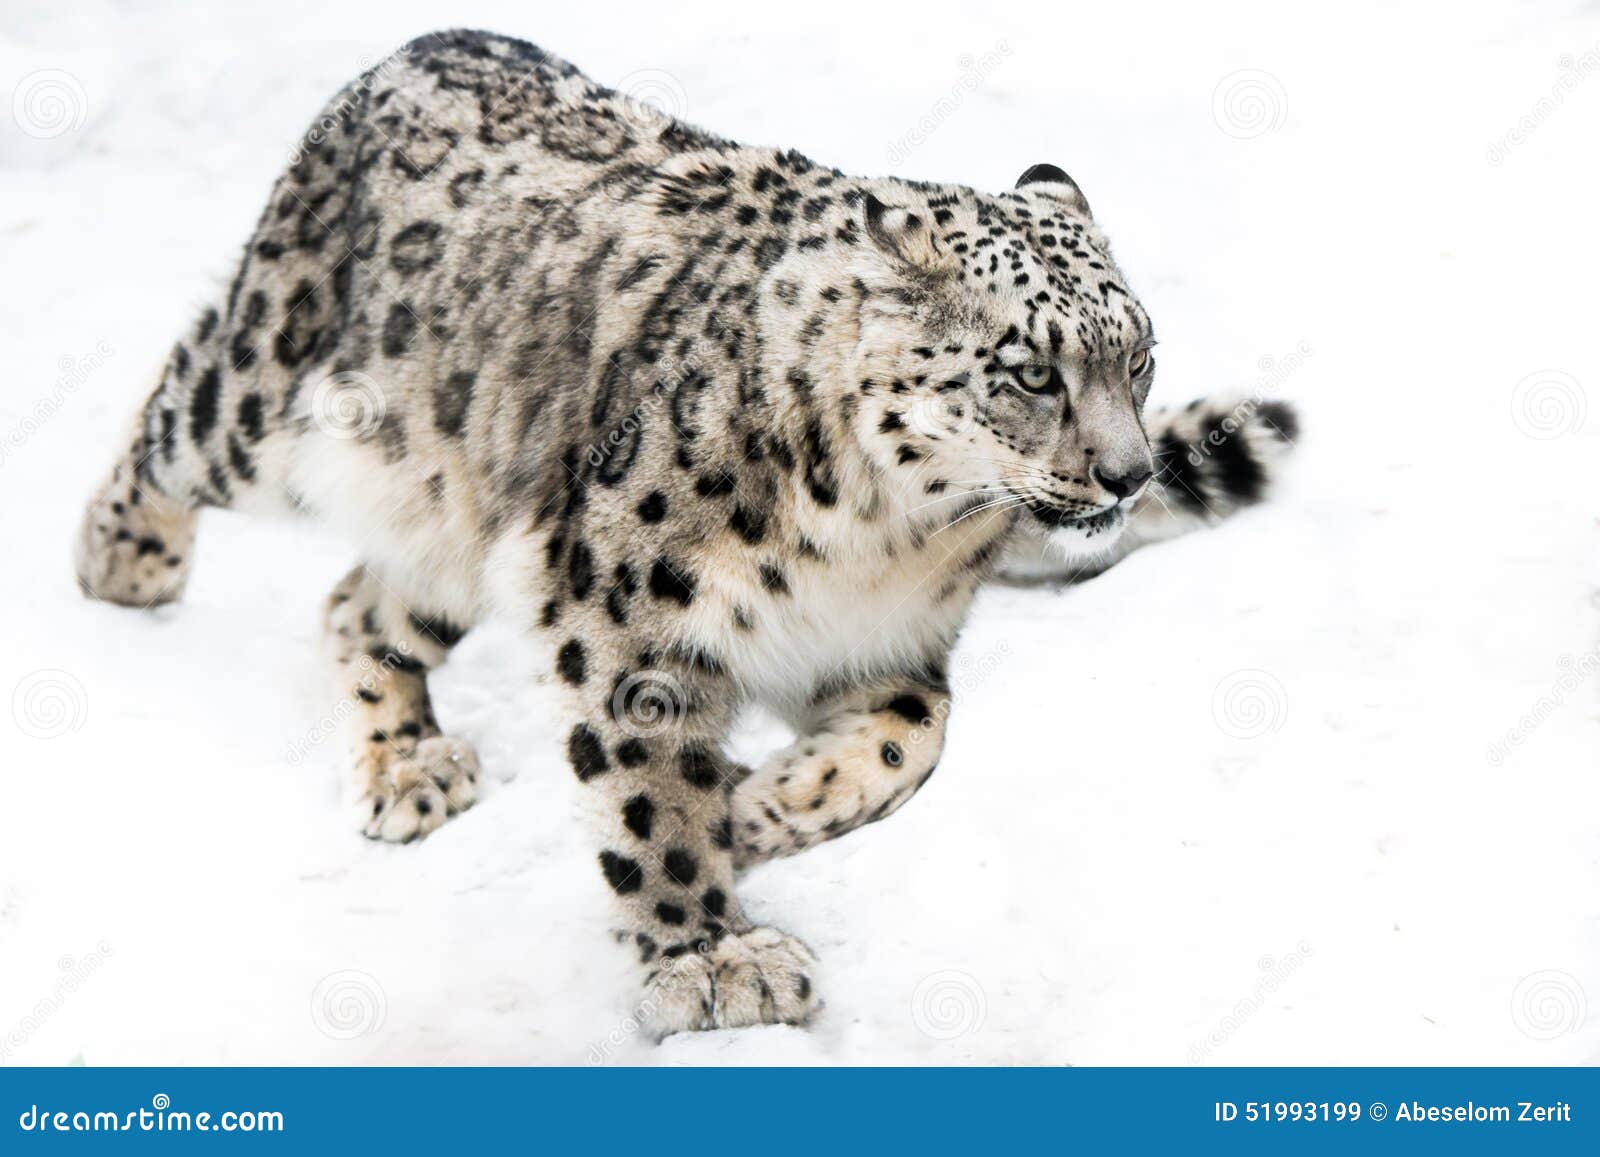 snow leopard on the run